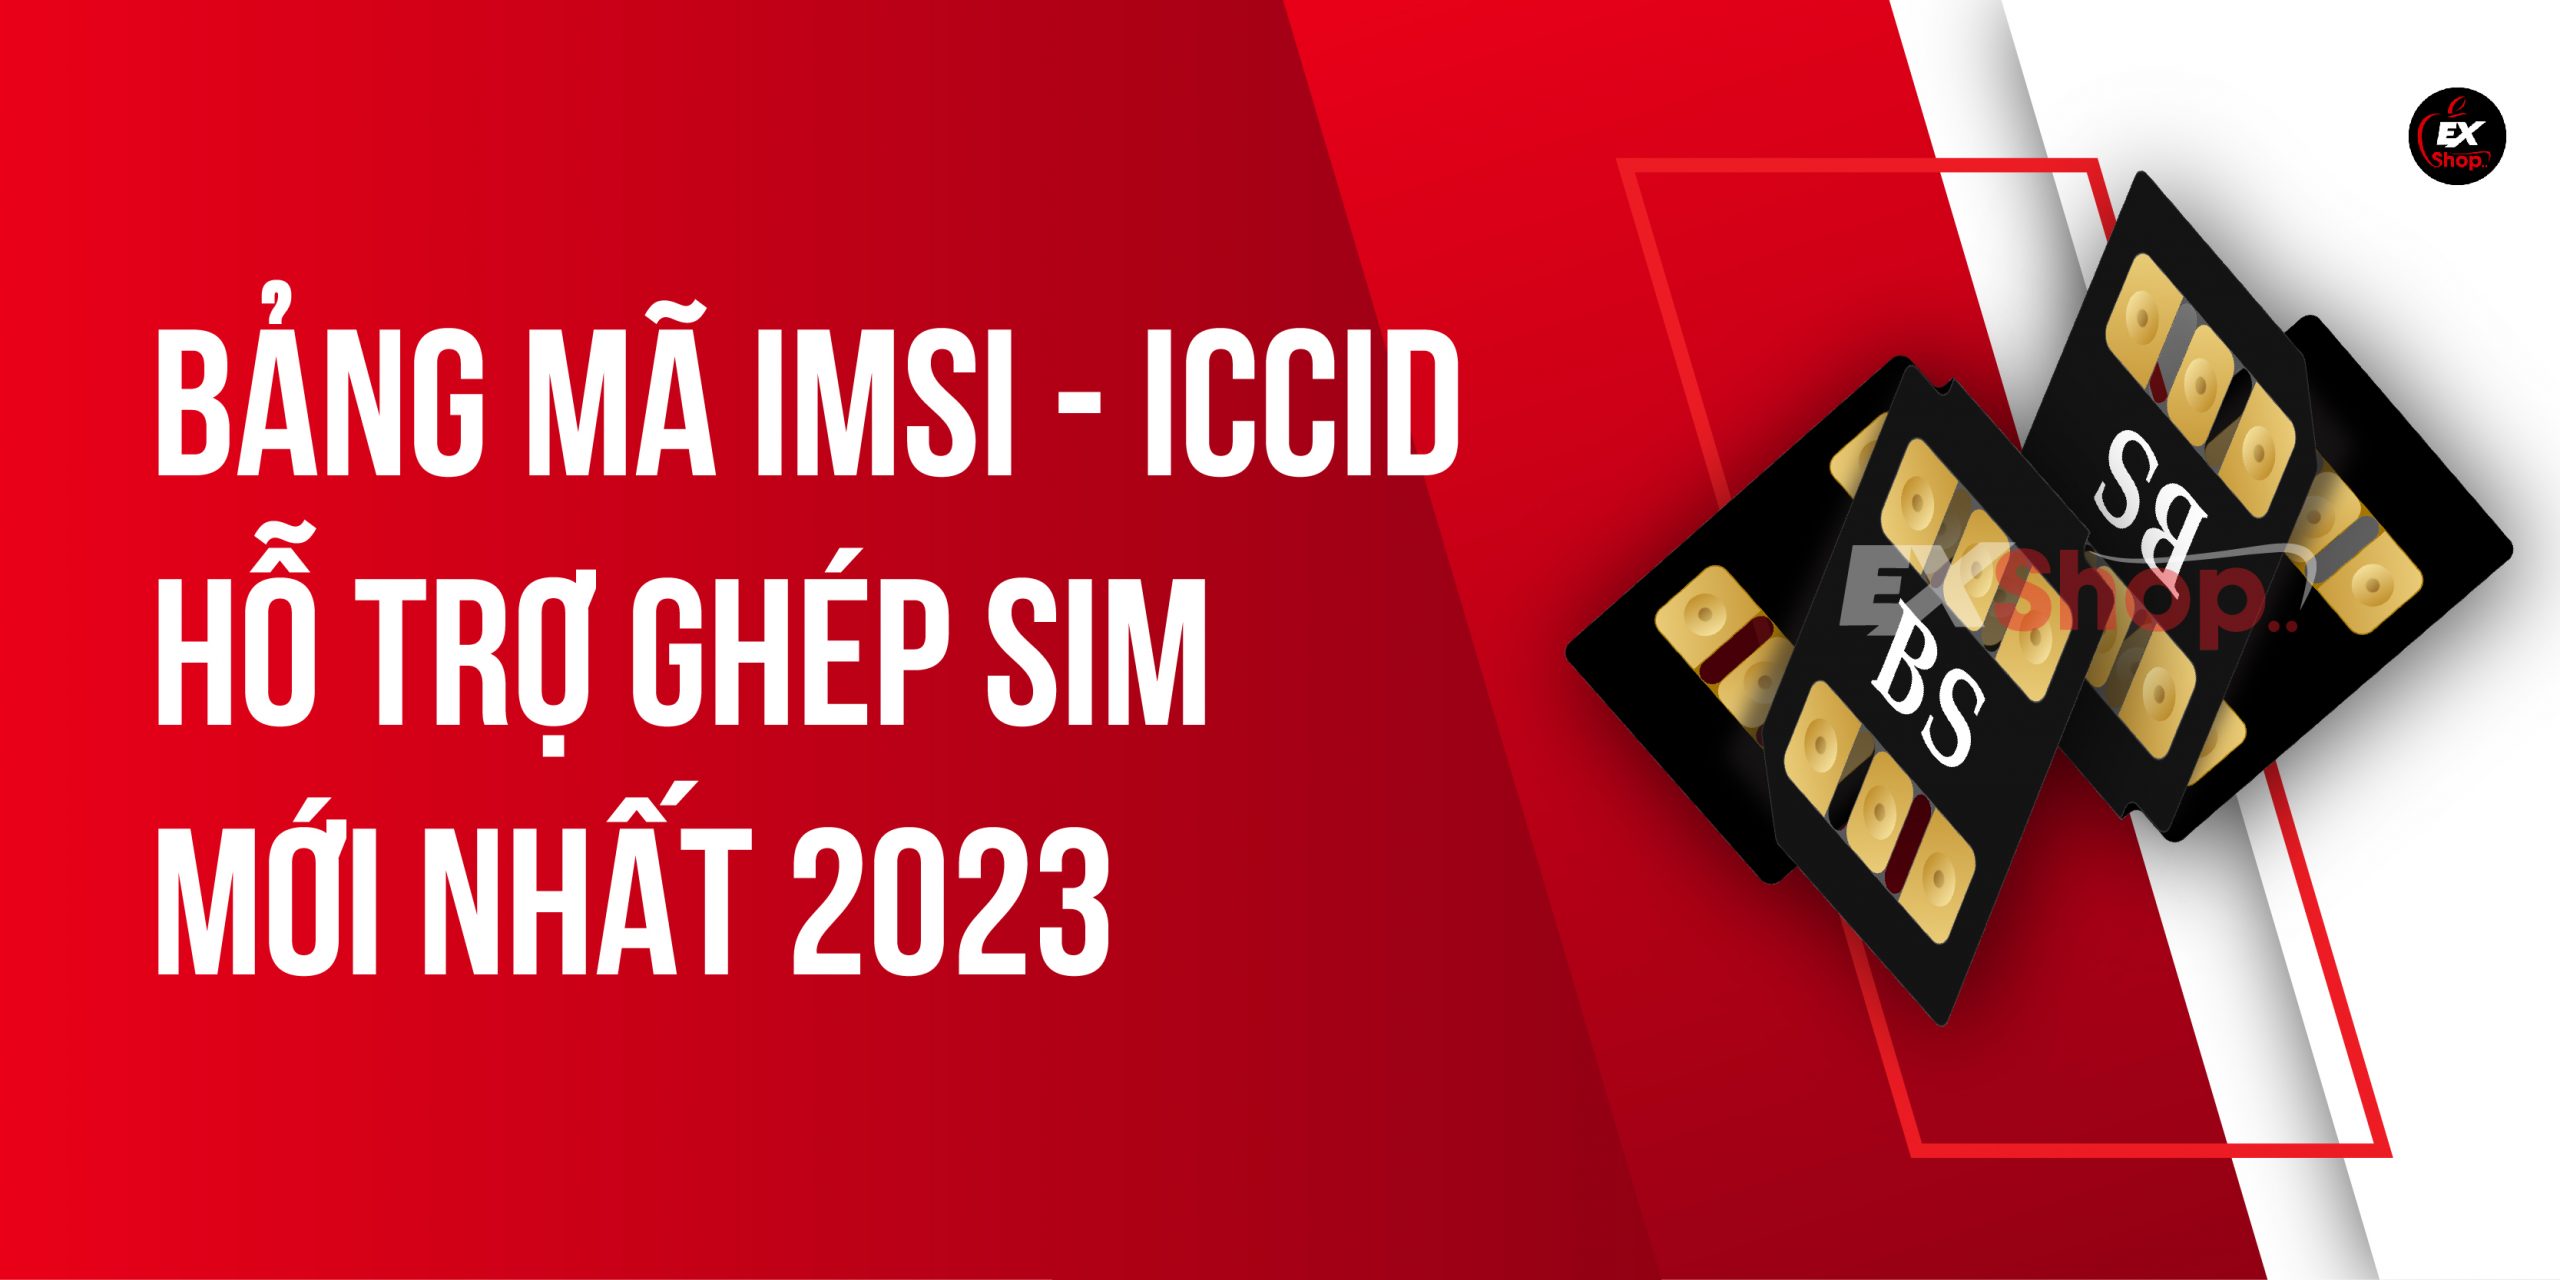 Bảng mã IMSI – ICCID hỗ trợ ghép sim iPhone Lock mới nhất 2023